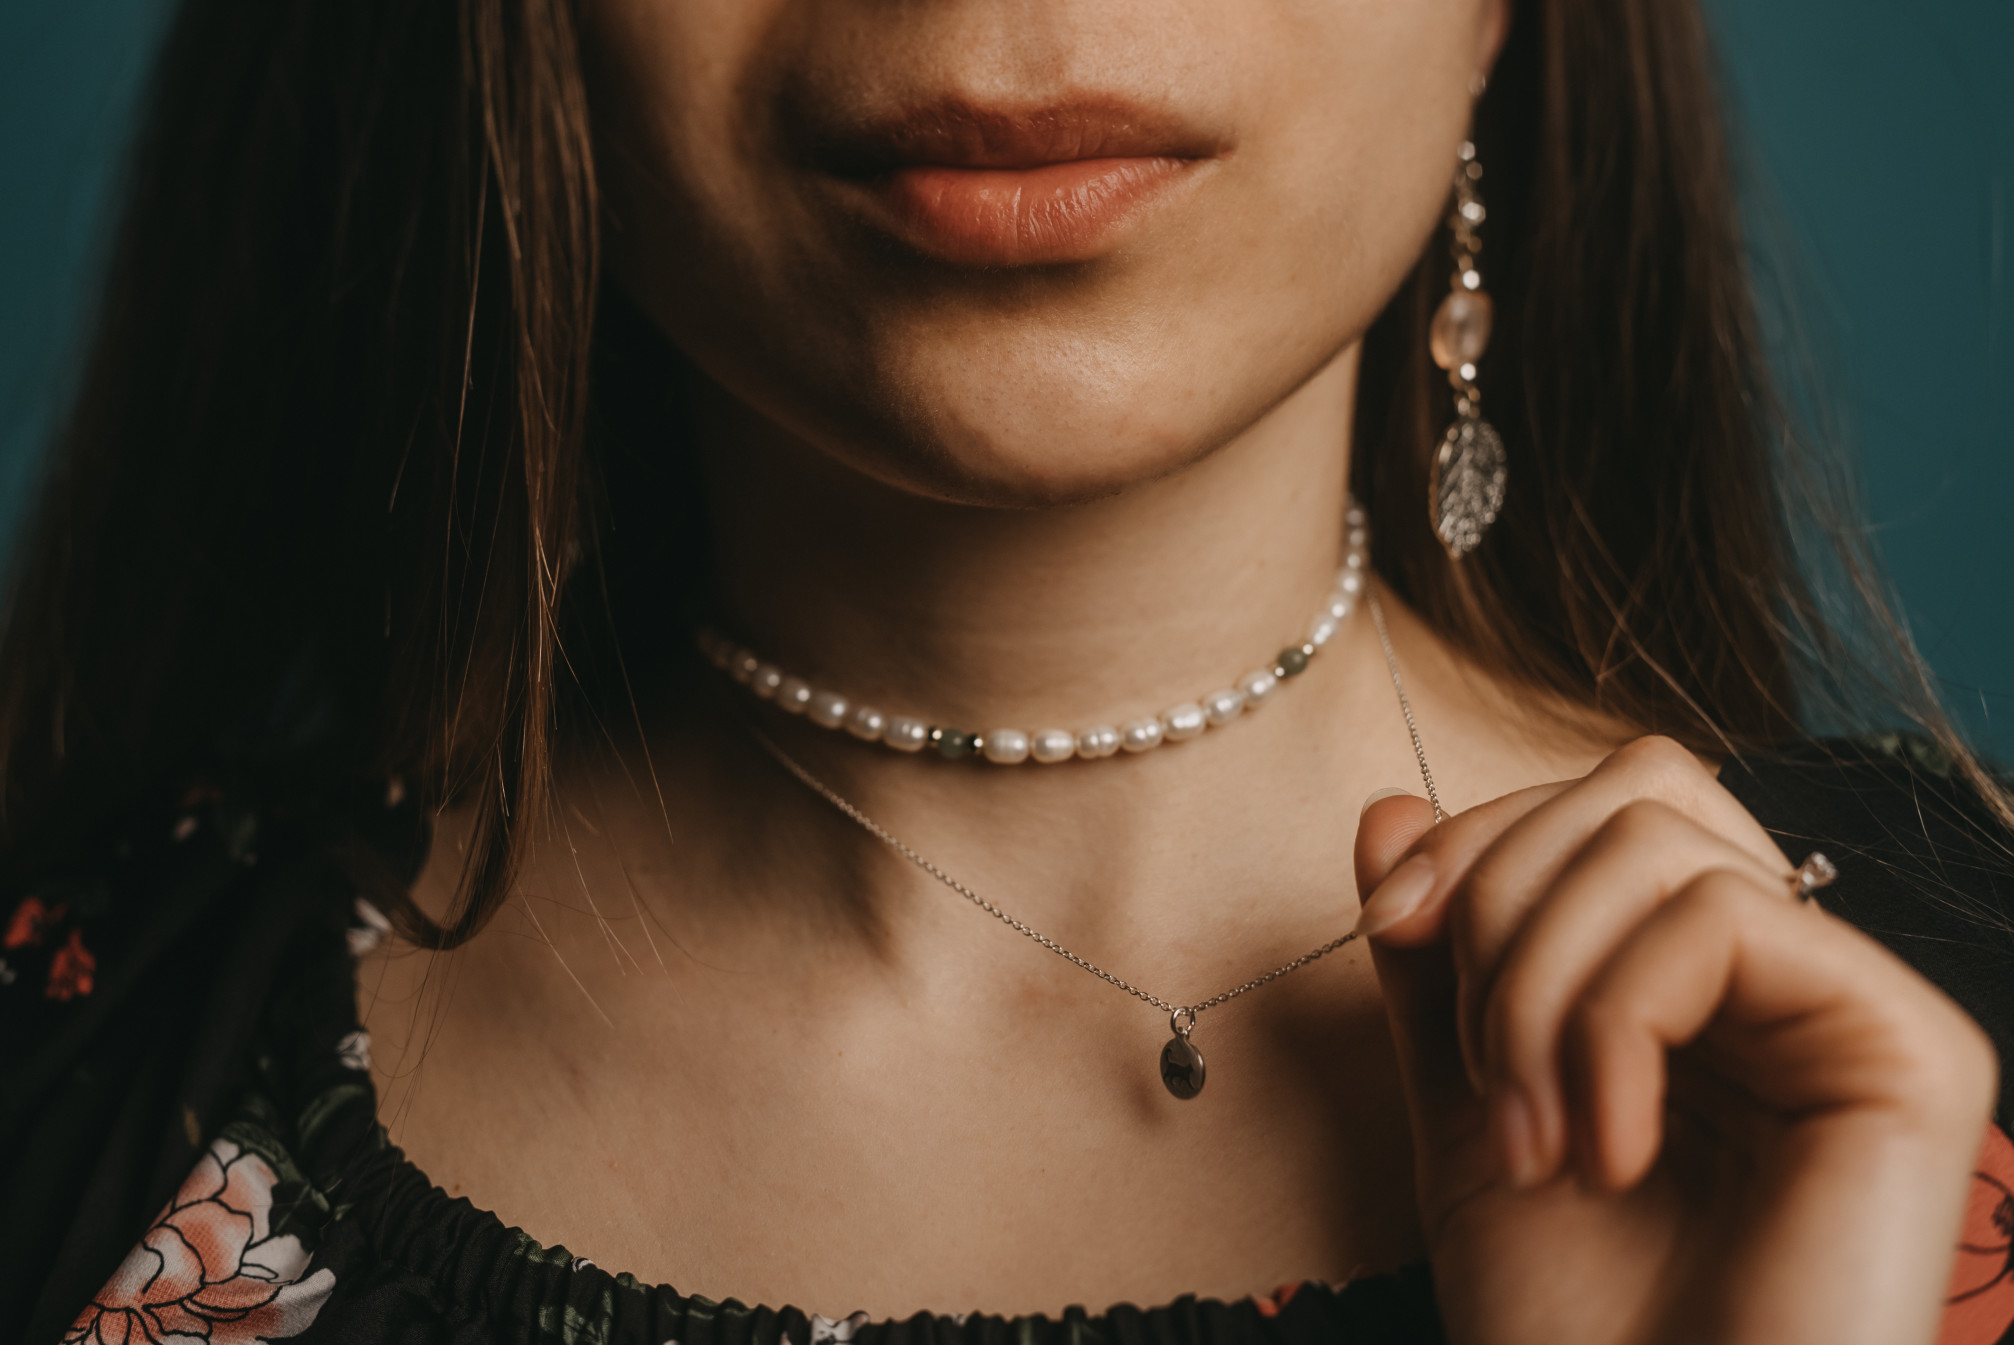 Importanta bijuteriilor in viata unei femei